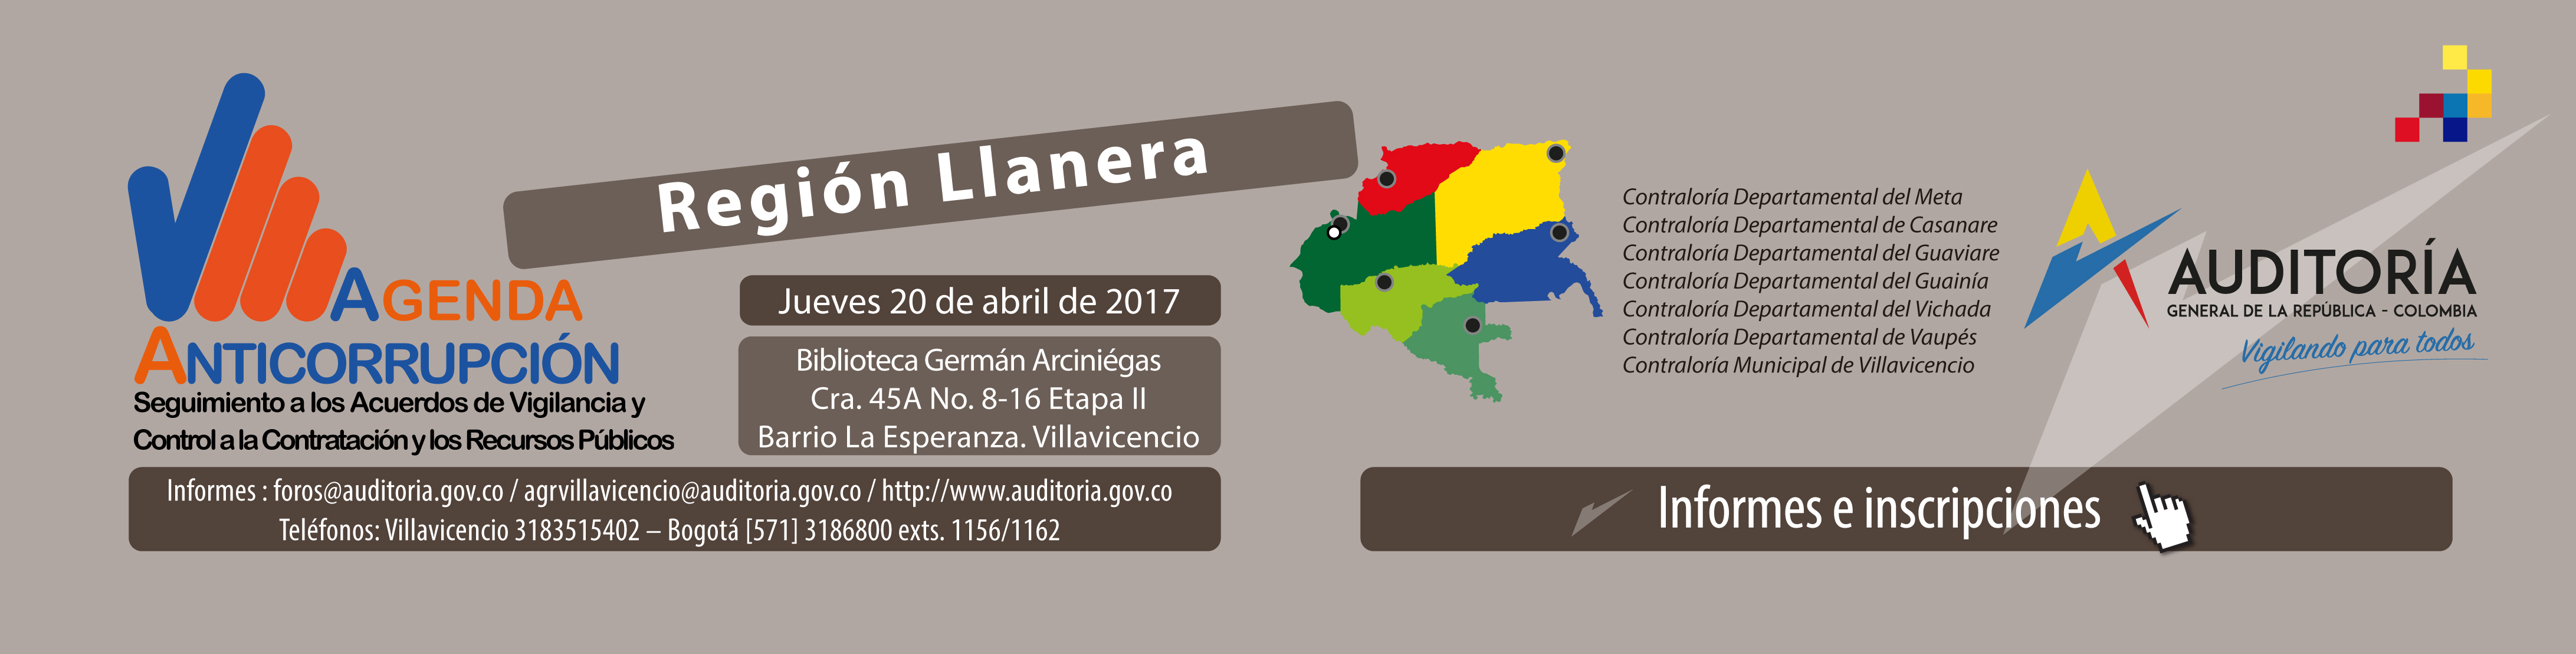 Agenda Anticorrupción - Región Llanera